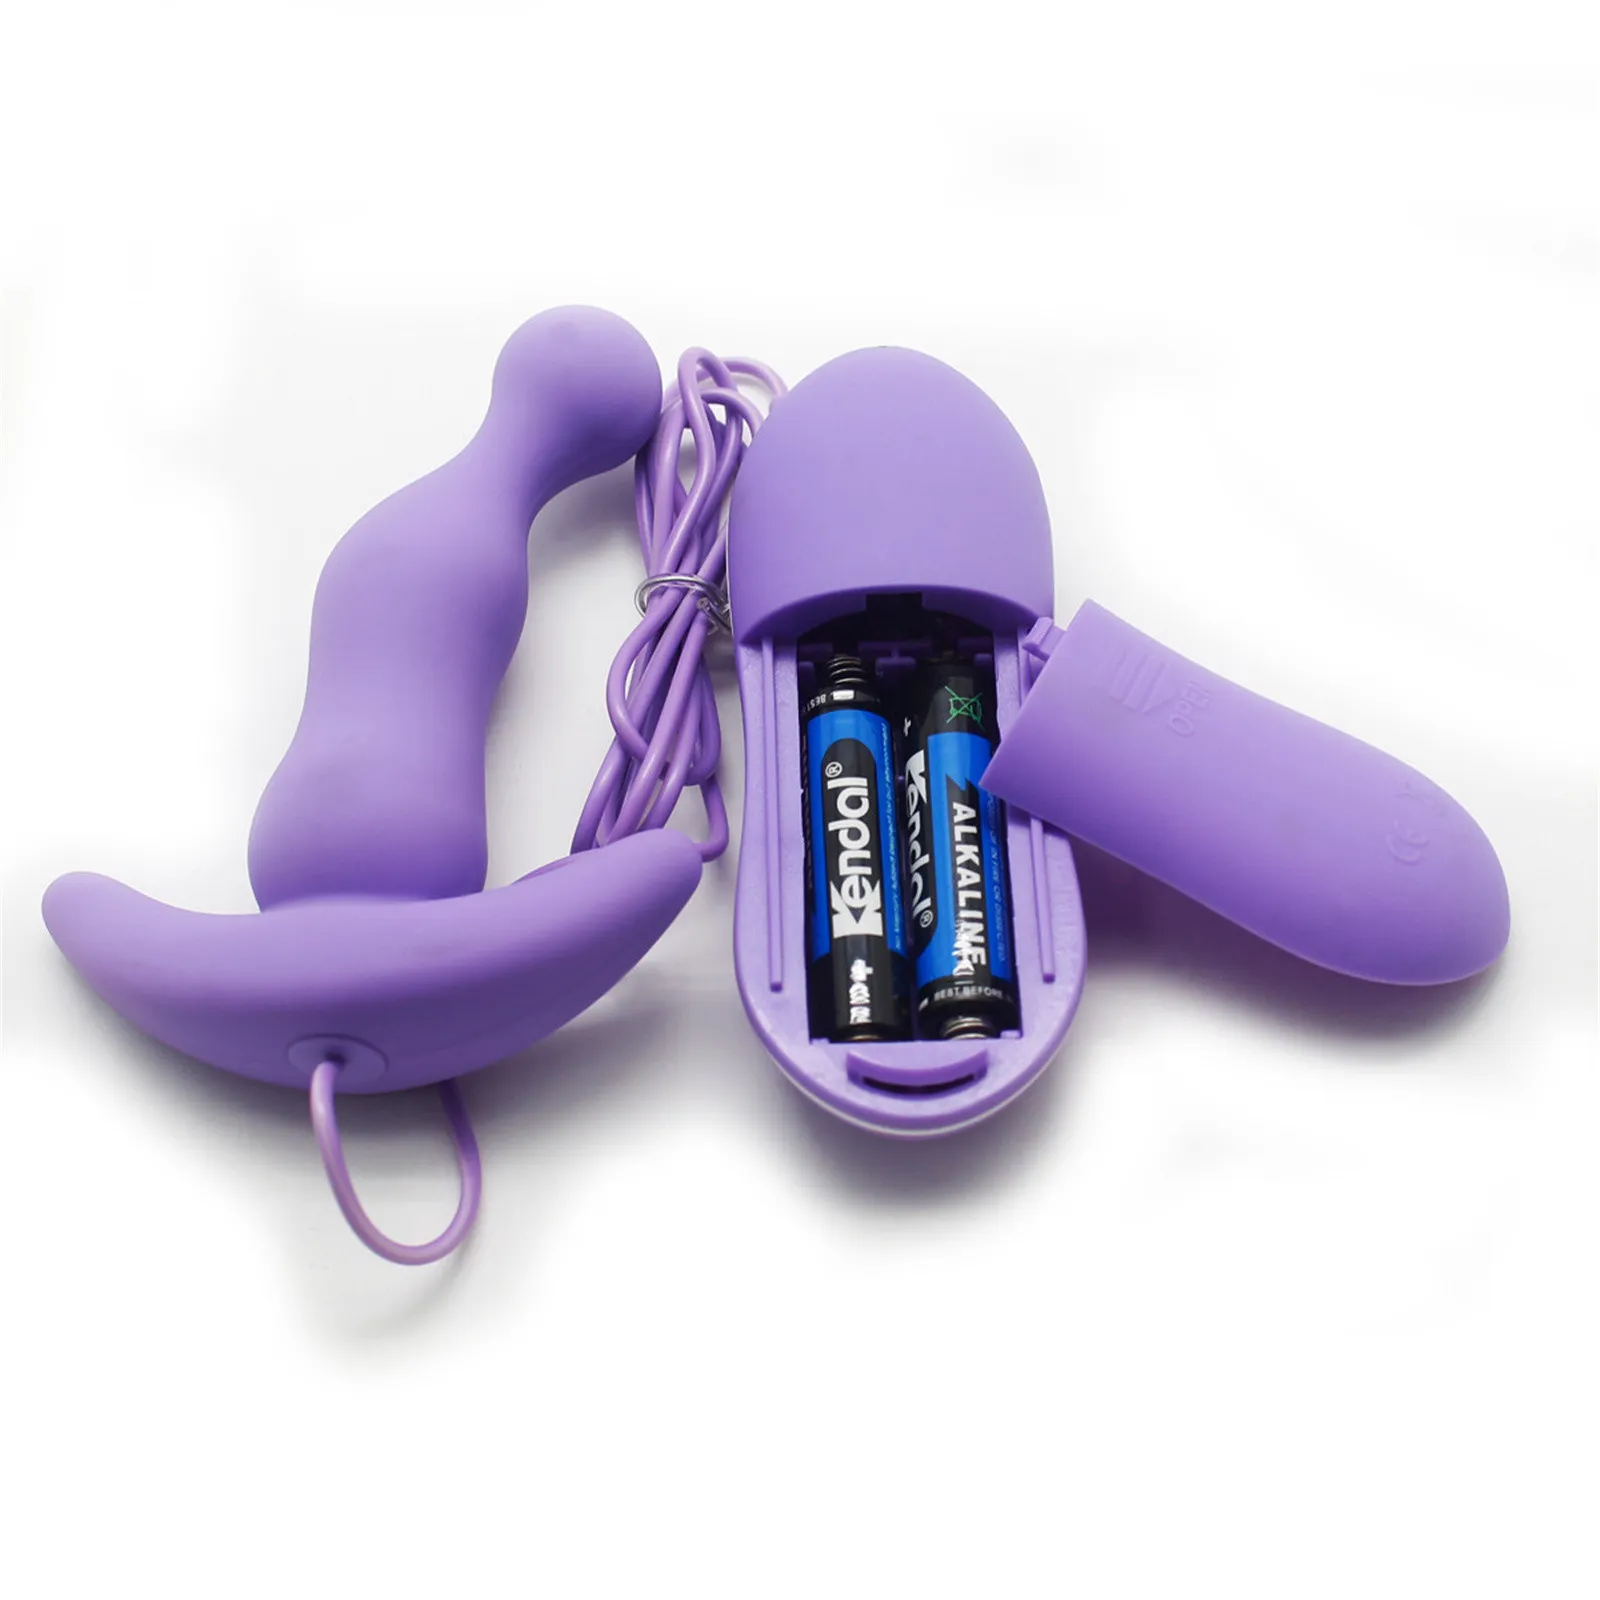 Sexiga leksaker för män prostata massager vibrator rumpa plugg anal svans roterande trådlös fjärr USB laddar vuxna produkter kvinnor